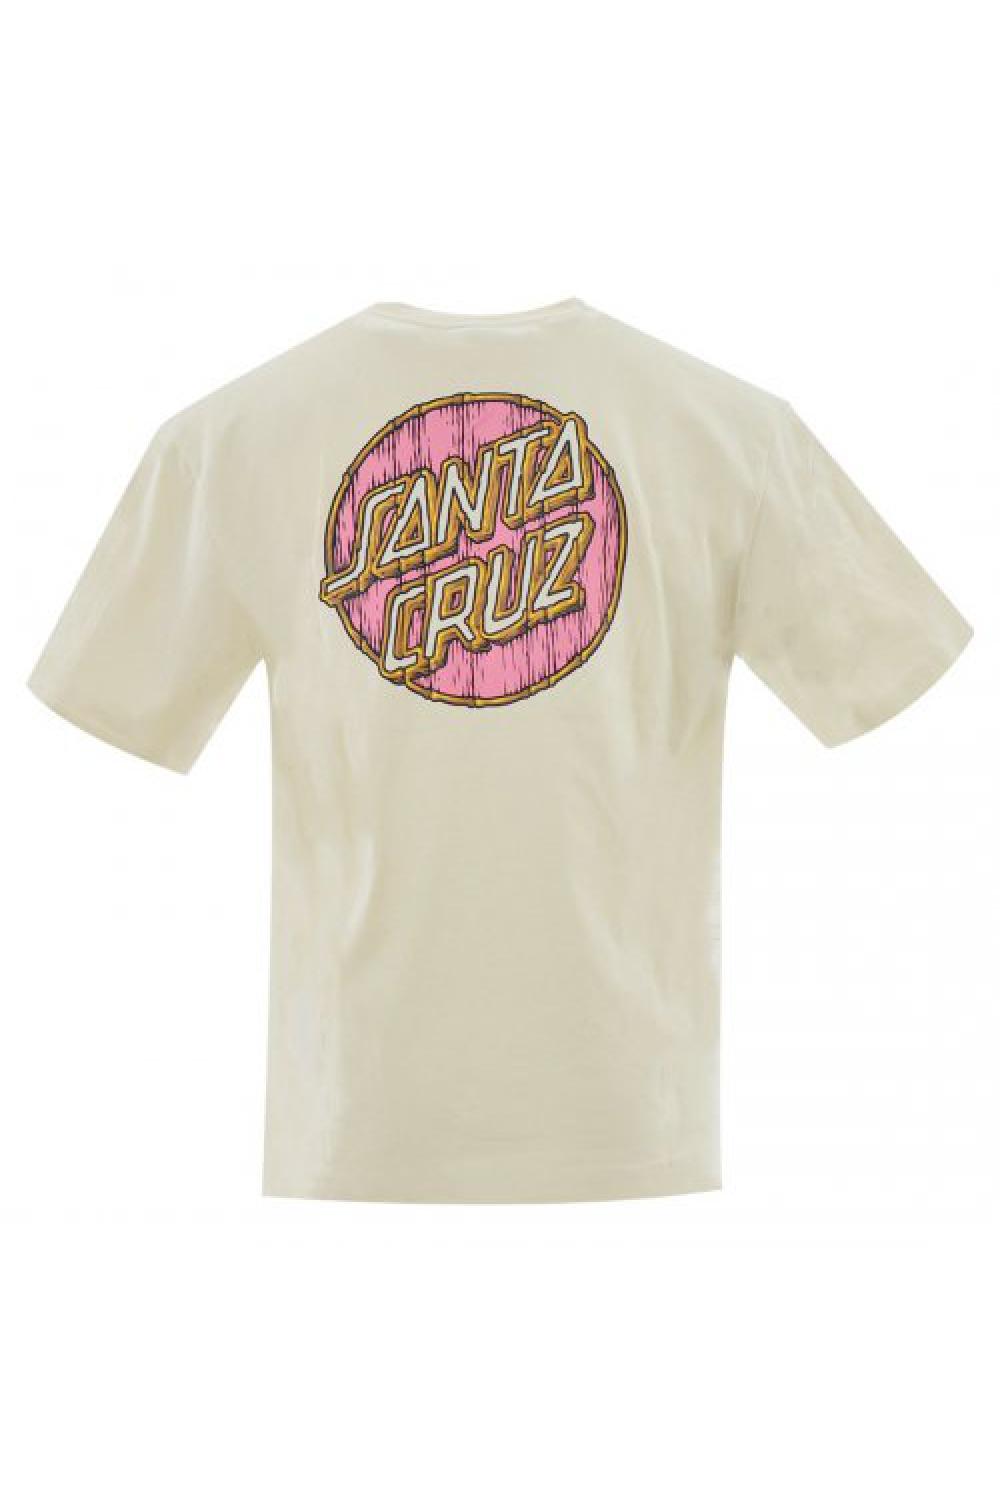 SANTA CRUZ T-shirt Tiki Dot Unisex - Off White (SCA-TEE-7485)